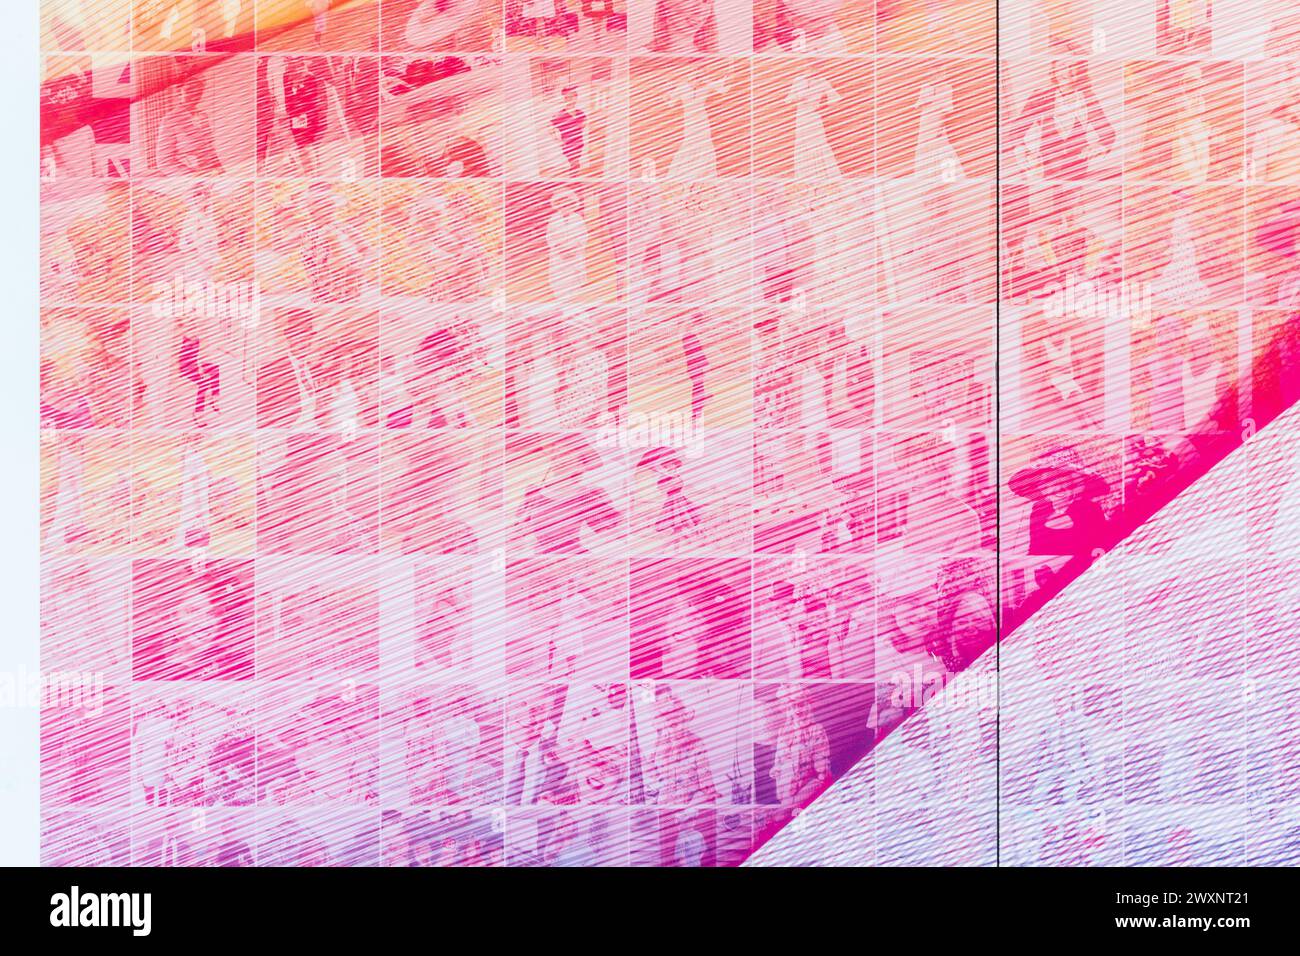 Riesige Regenbogenmontage von Völkerfotos aus dem Royal Ascot at Home Jahr während der covid-19-Pandemie 2020, Ascot Racecourse, Berkshire, England, Vereinigtes Königreich Stockfoto